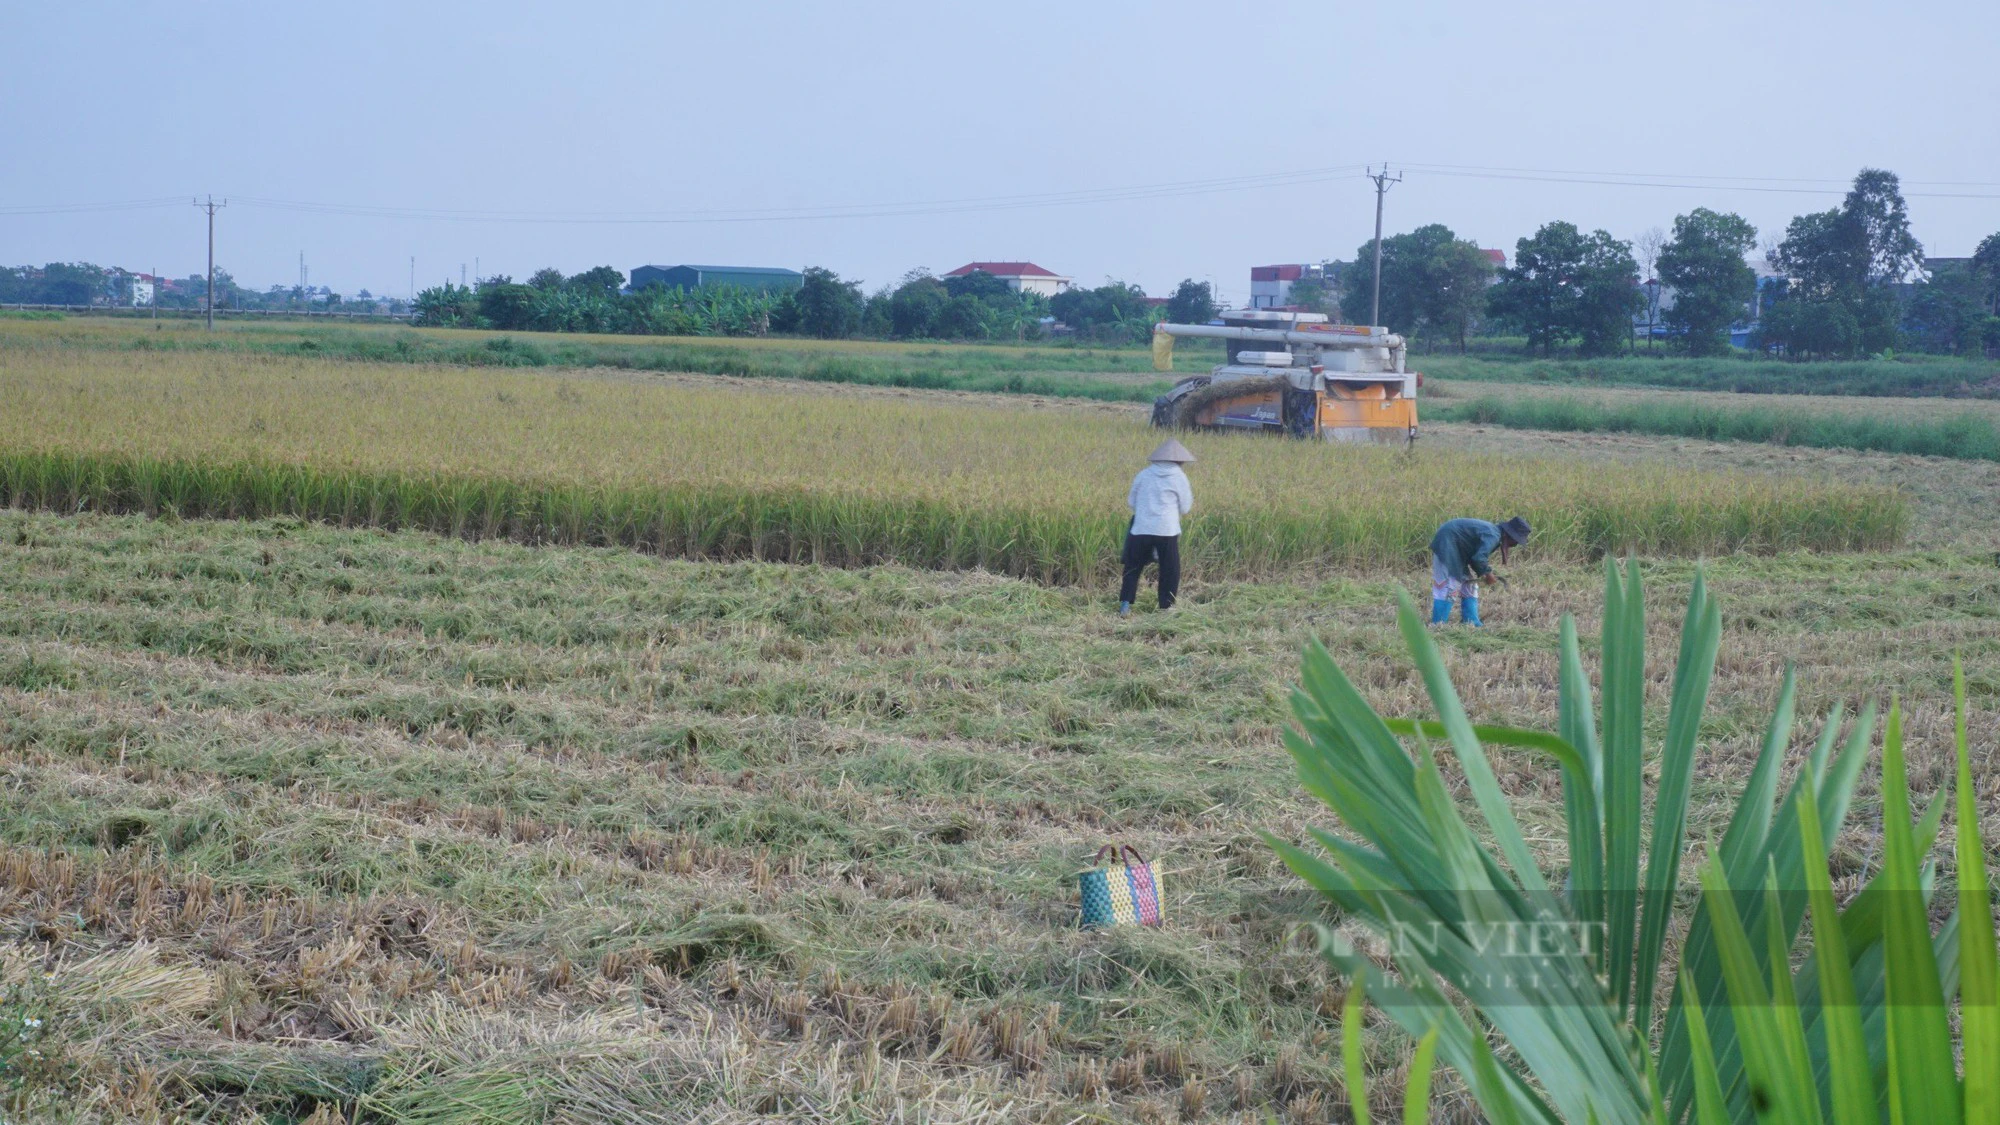 Gần 60 tuổi mới bắt tay làm nông nghiệp, người đàn ông gom 14 ha đất bỏ hoang để trồng lúa - Ảnh 5.